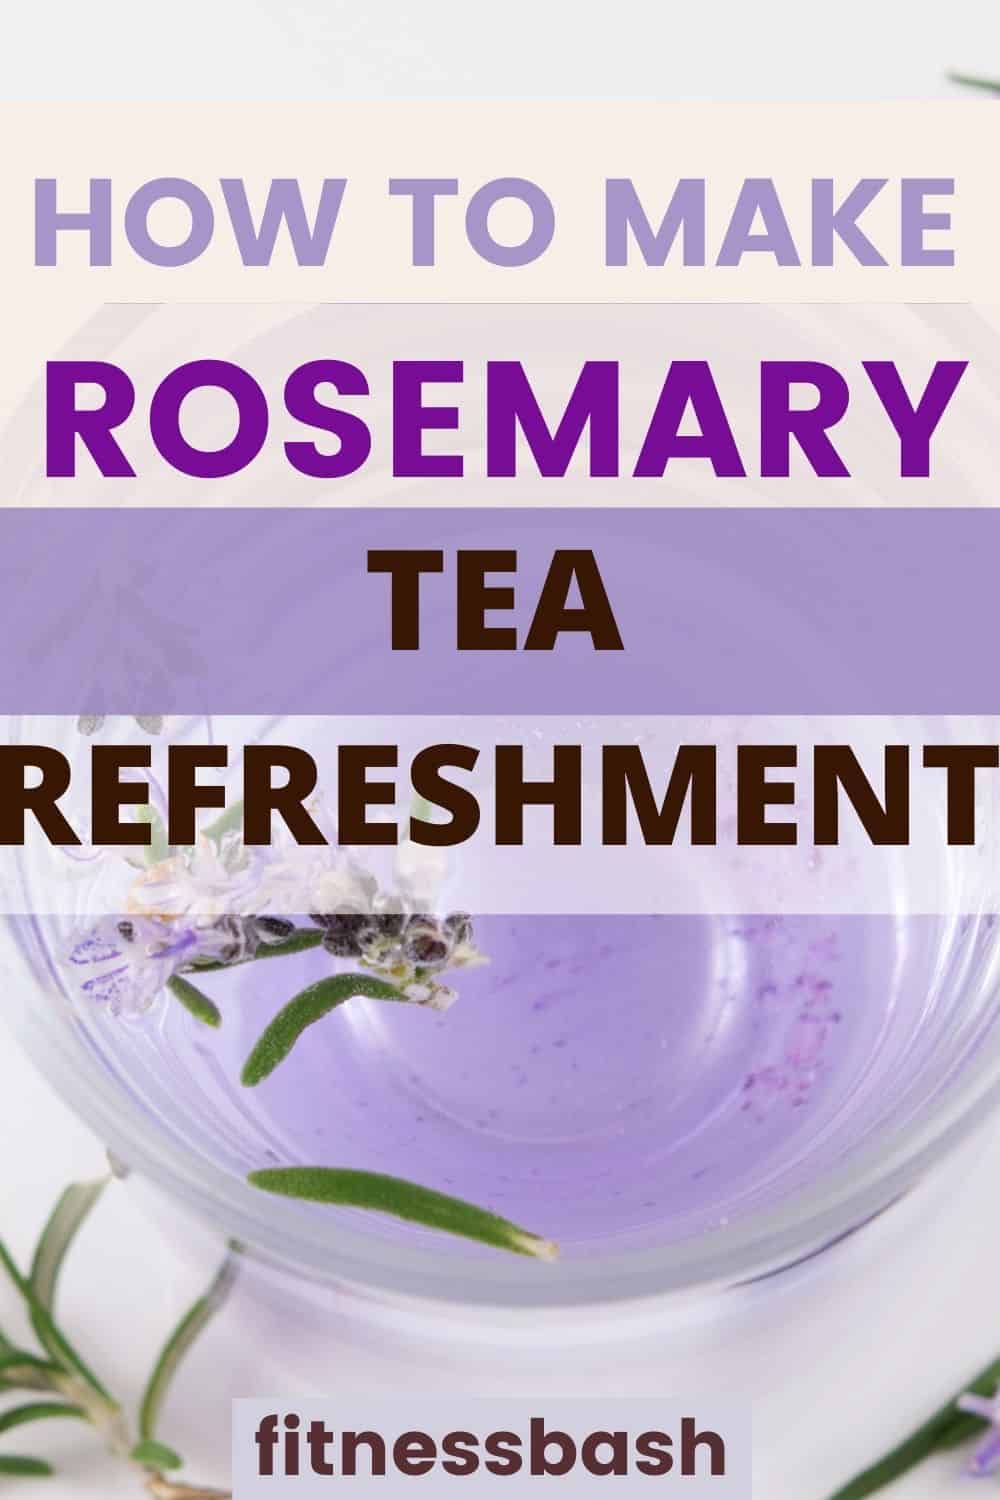 rosemary tea recipe